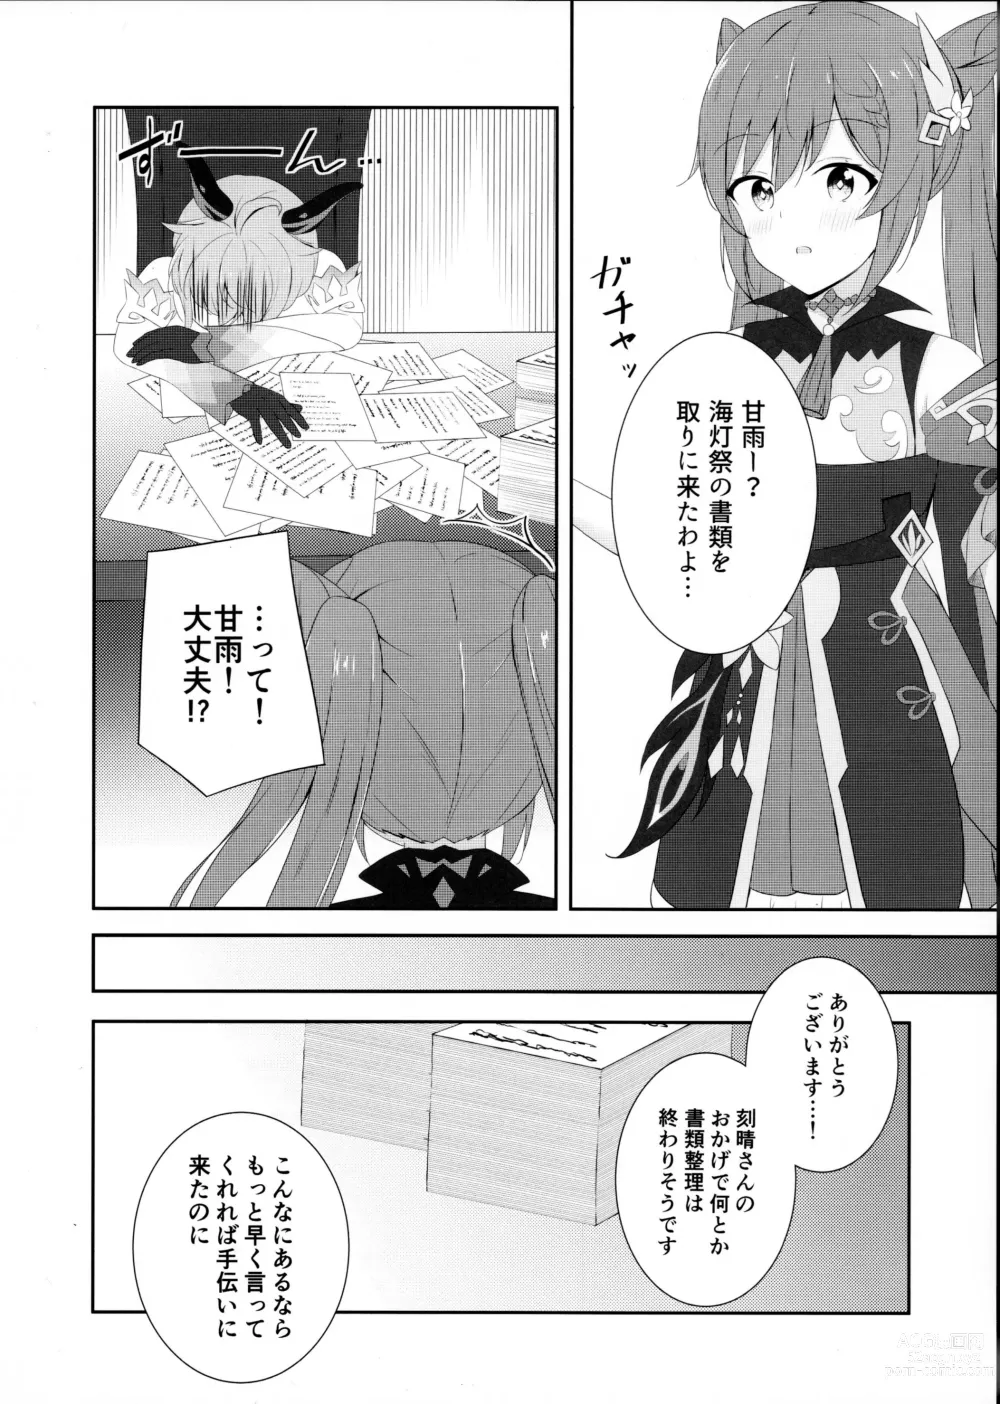 Page 3 of doujinshi KokuKan wa Echi ga Shitai!